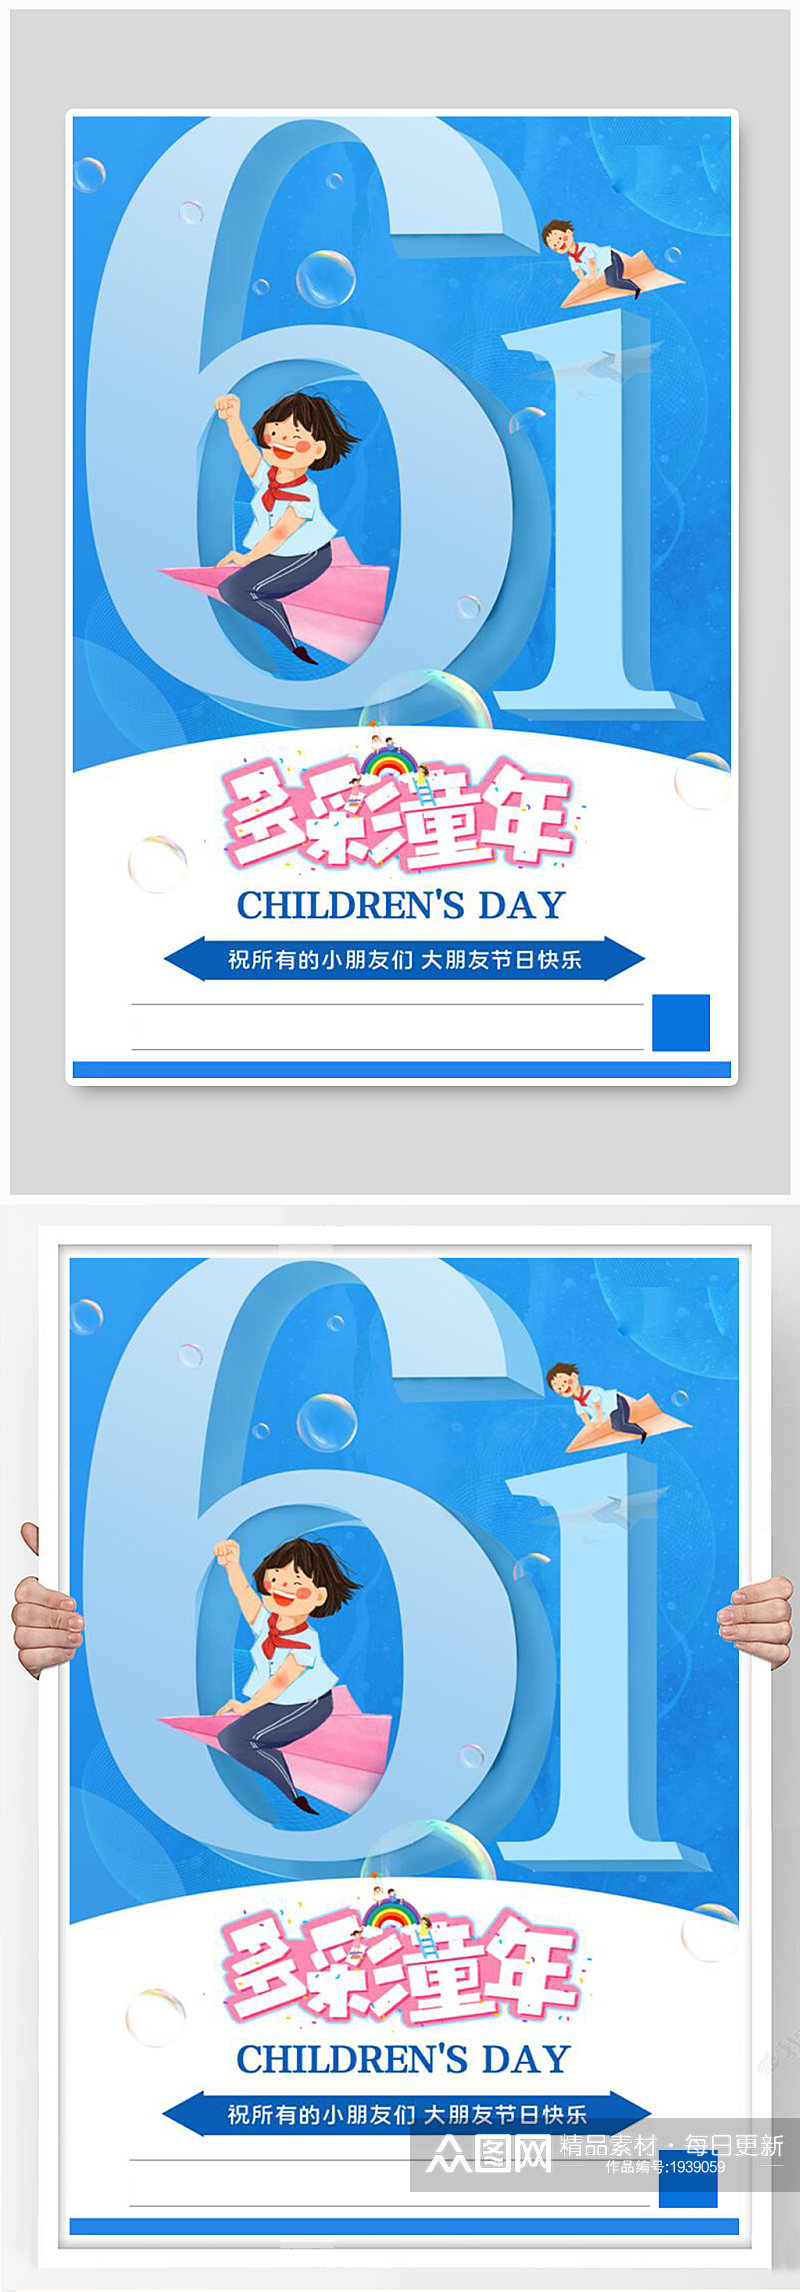 61儿童节女孩儿童蓝色简约海报素材